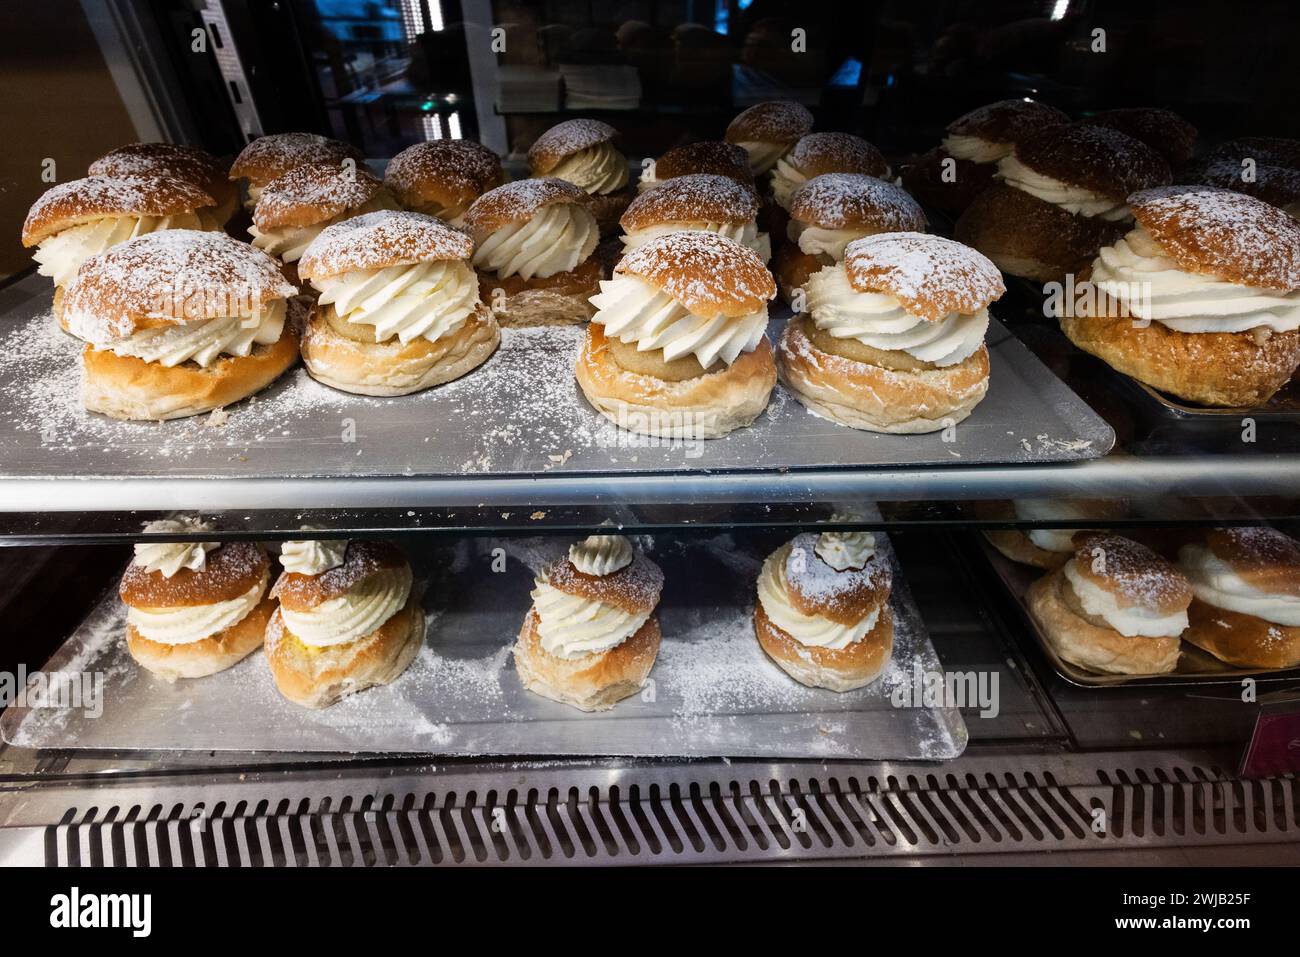 La semla traditionnelle suédoise est vendue en grandes quantités dans les boulangeries suédoises sur Semmeldagen (en anglais : le jour de la semla). À la boulangerie Tannefors à Linköping, en Suède, plus de 5 000 ont été vendues mardi. Banque D'Images